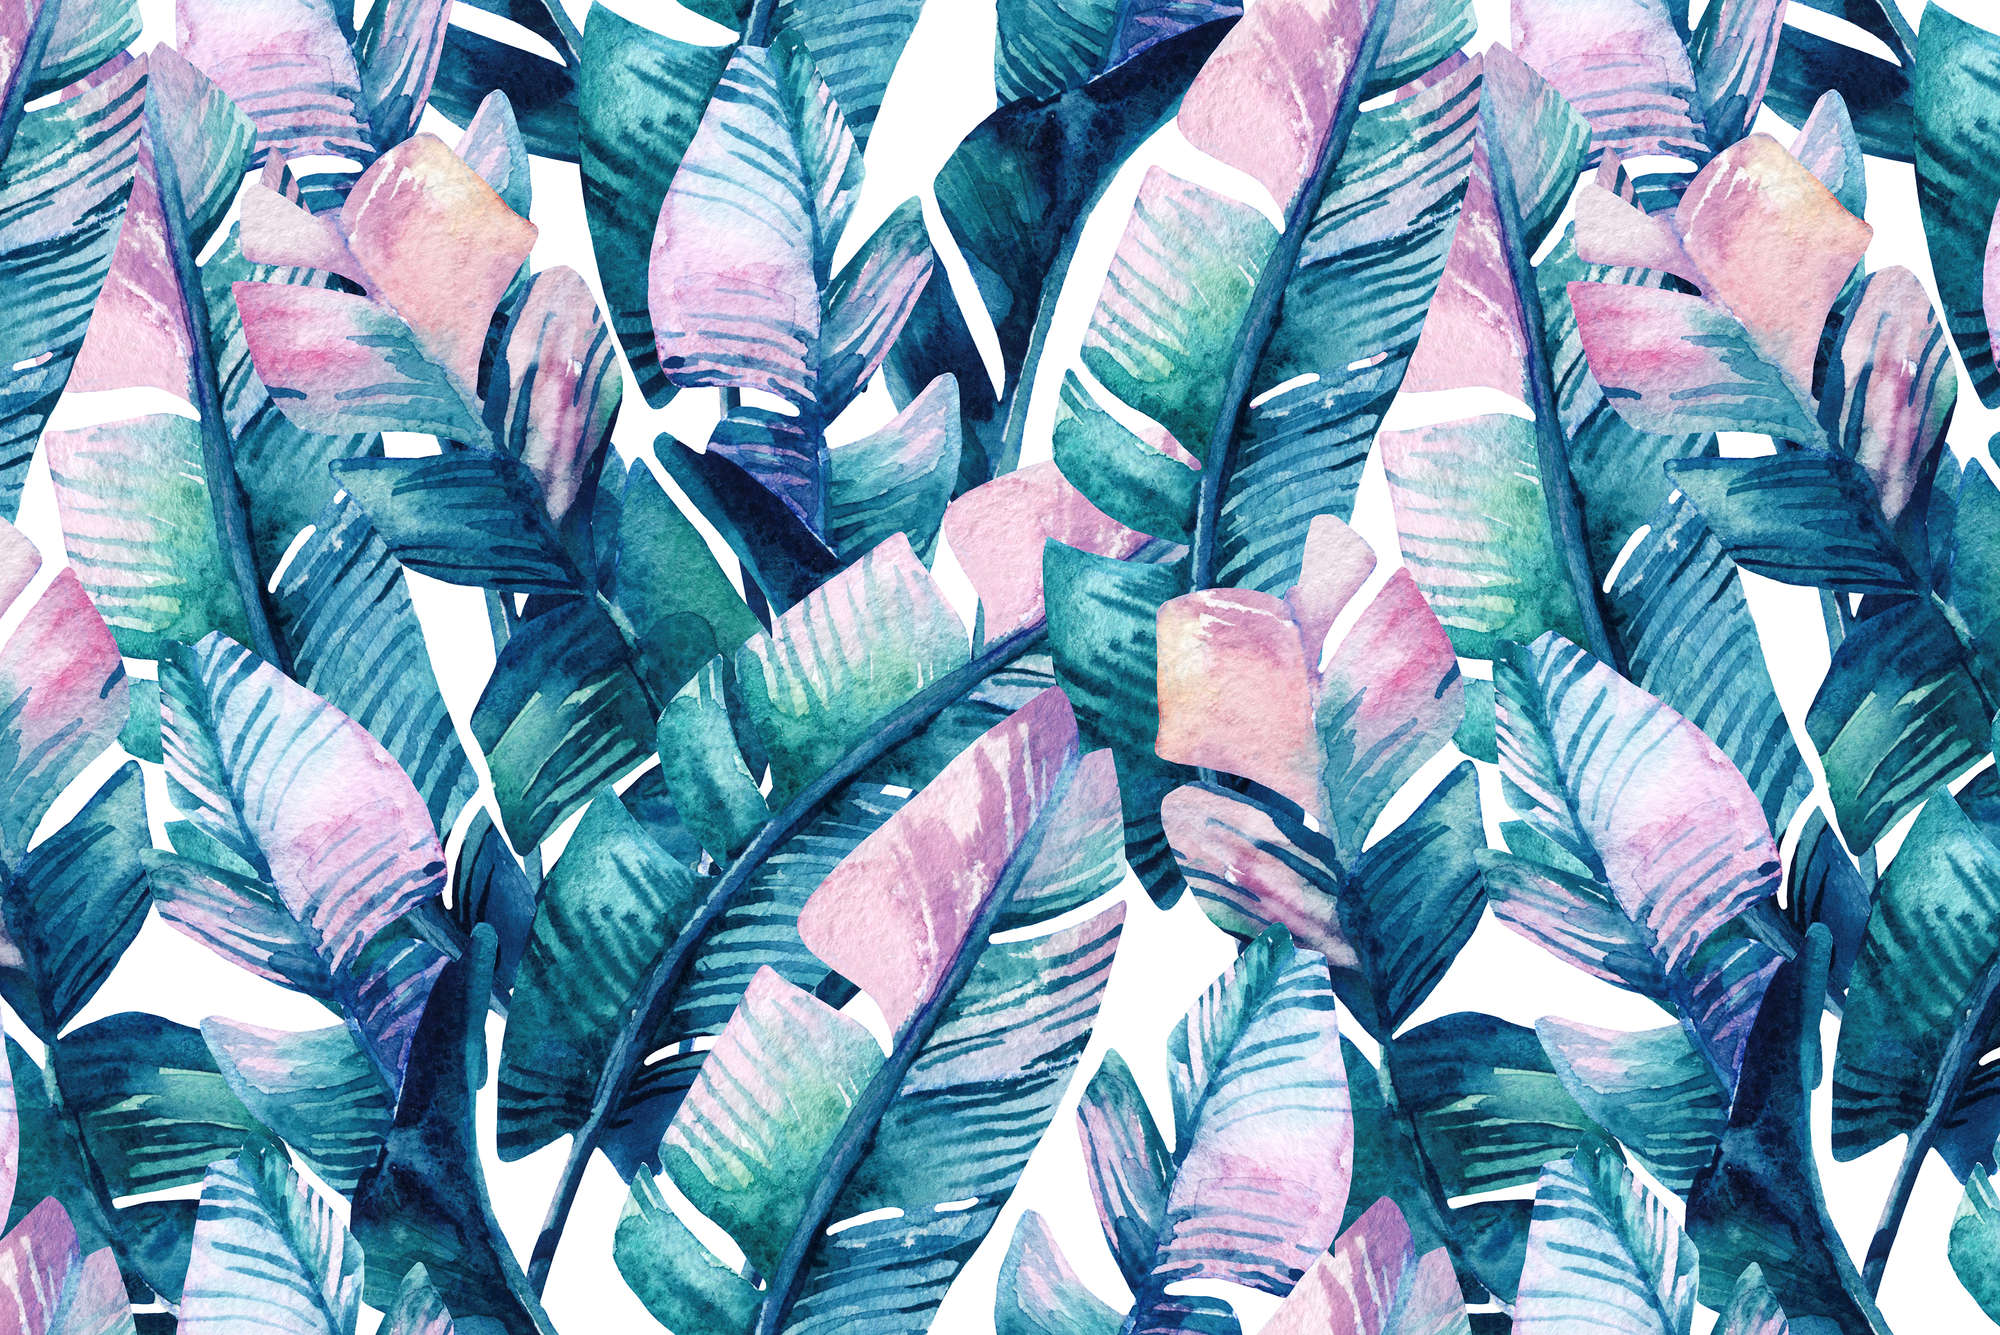             Grafisch behang jungle planten roze turquoise op mat glad vlies
        